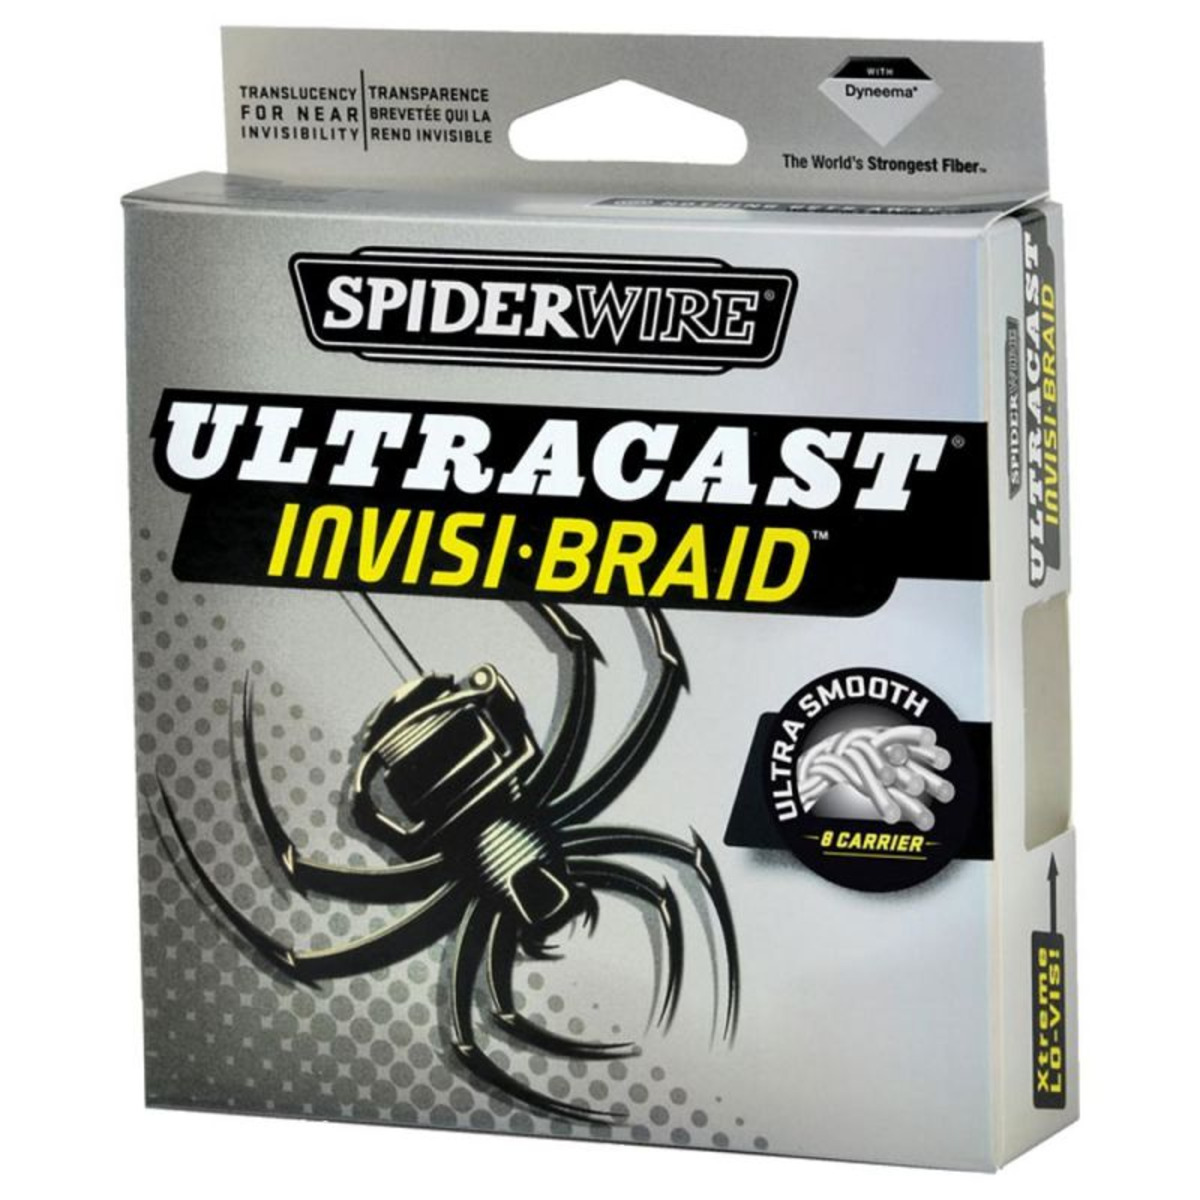 Spiderwire Hilos de Pesca Ultracast 8 Carriers Invisi-Braid 0.14